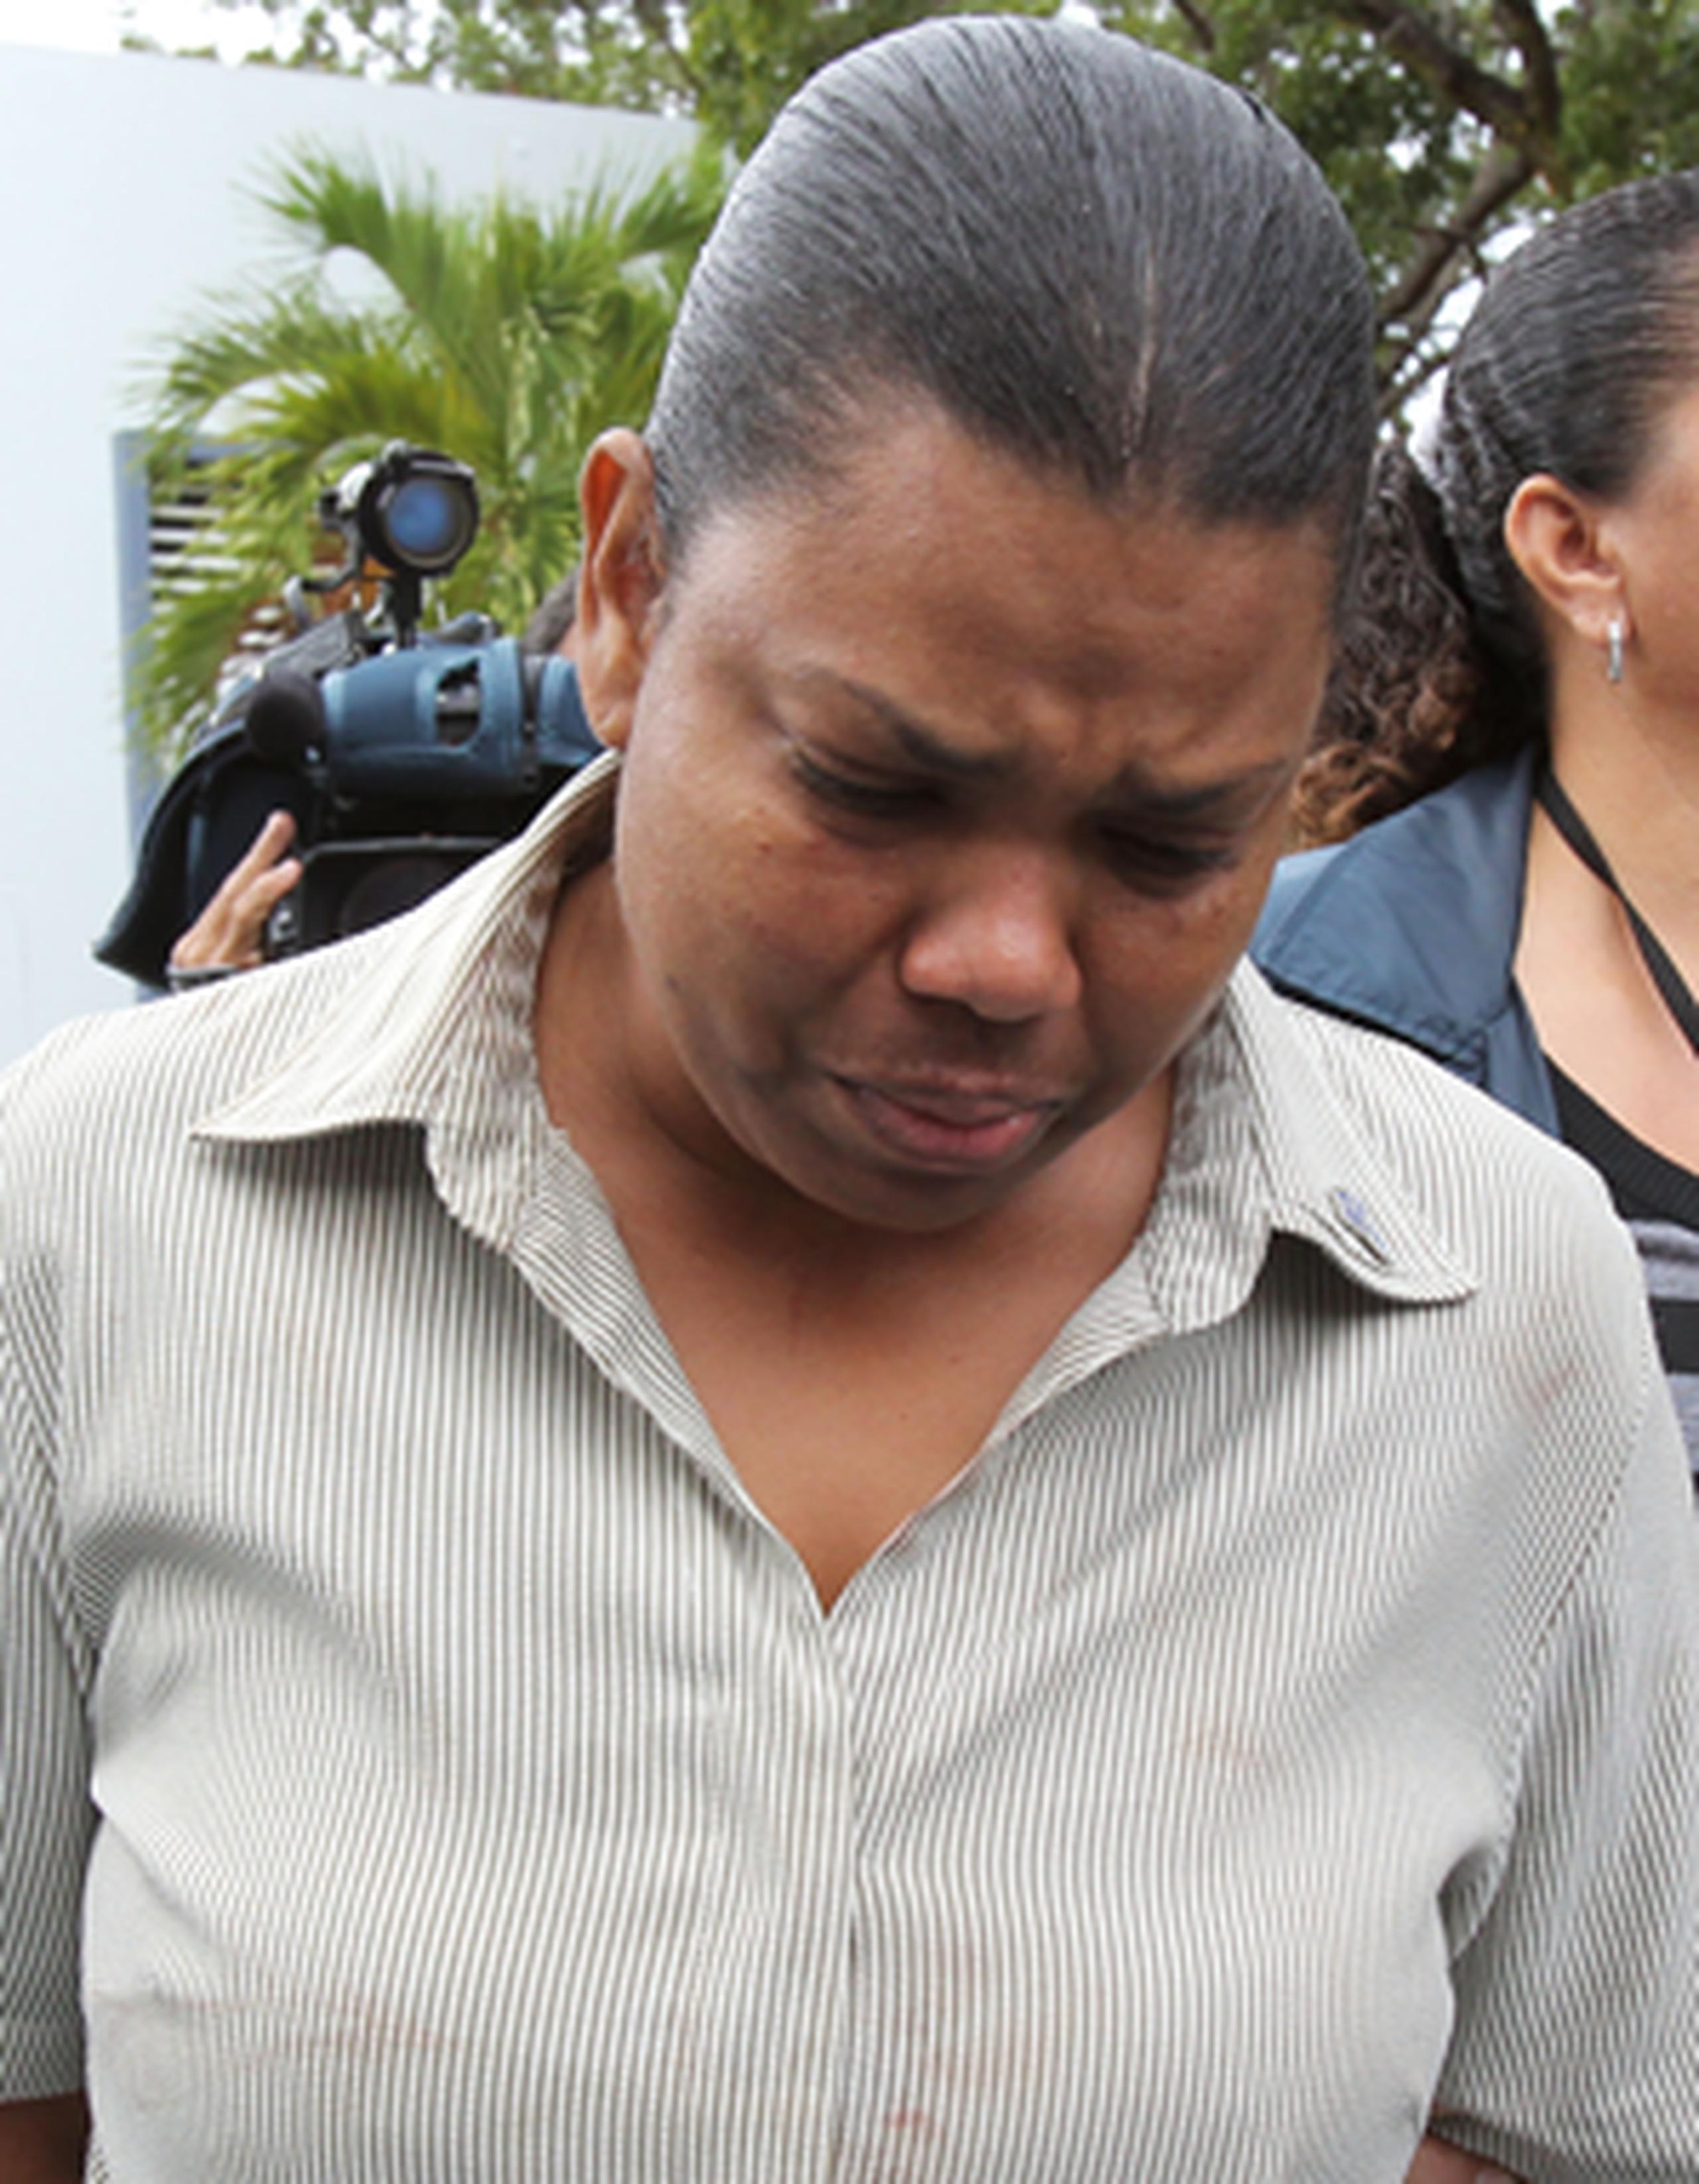 Lisette Cotto Casanova se declaró culpable de asesinato atenuado por la muerte de Elia Arizmendi Cantero ocurrida en medio de una pelea entre ambas, el 23 de marzo de 2012, en una habitación del hotel Río Mar Beach Resort en Río Grande. (Archivo)